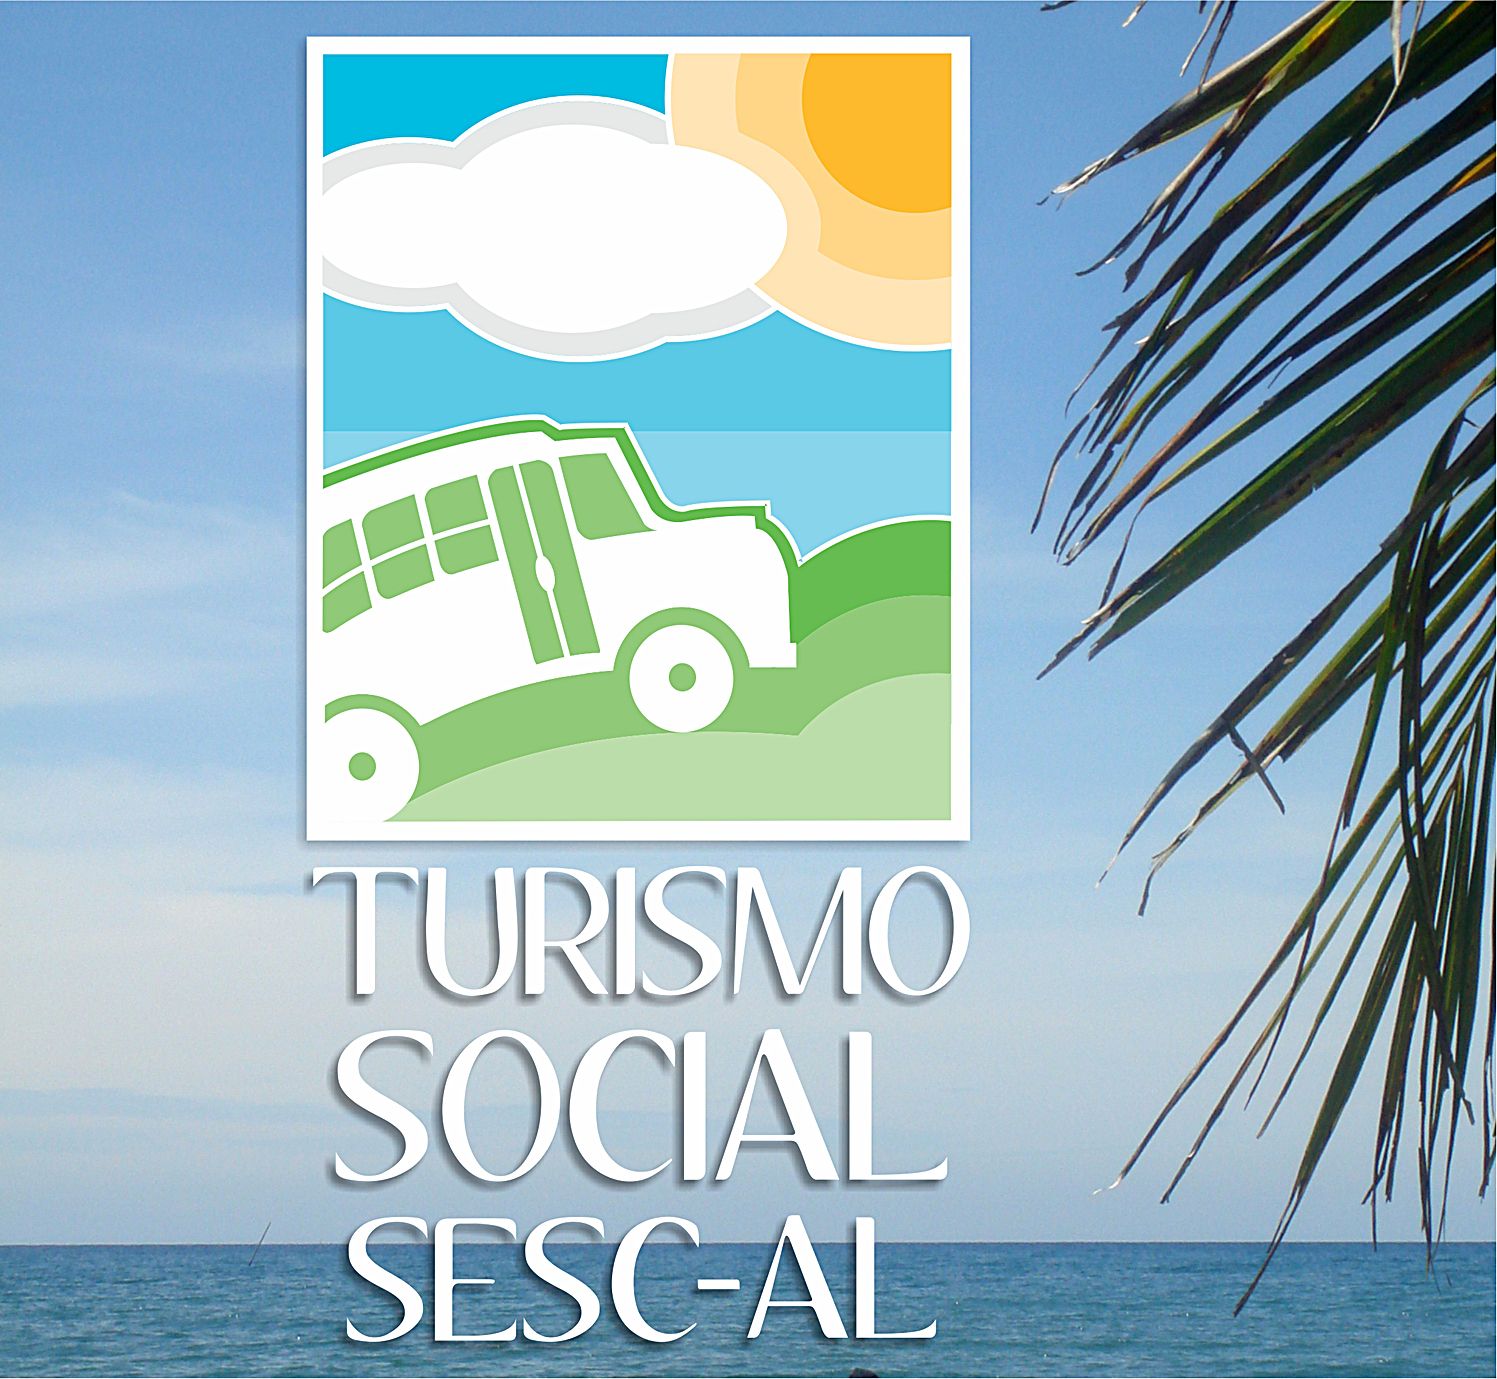 Aberta A Programação De Excursões Do Turismo Social De 2018 7626